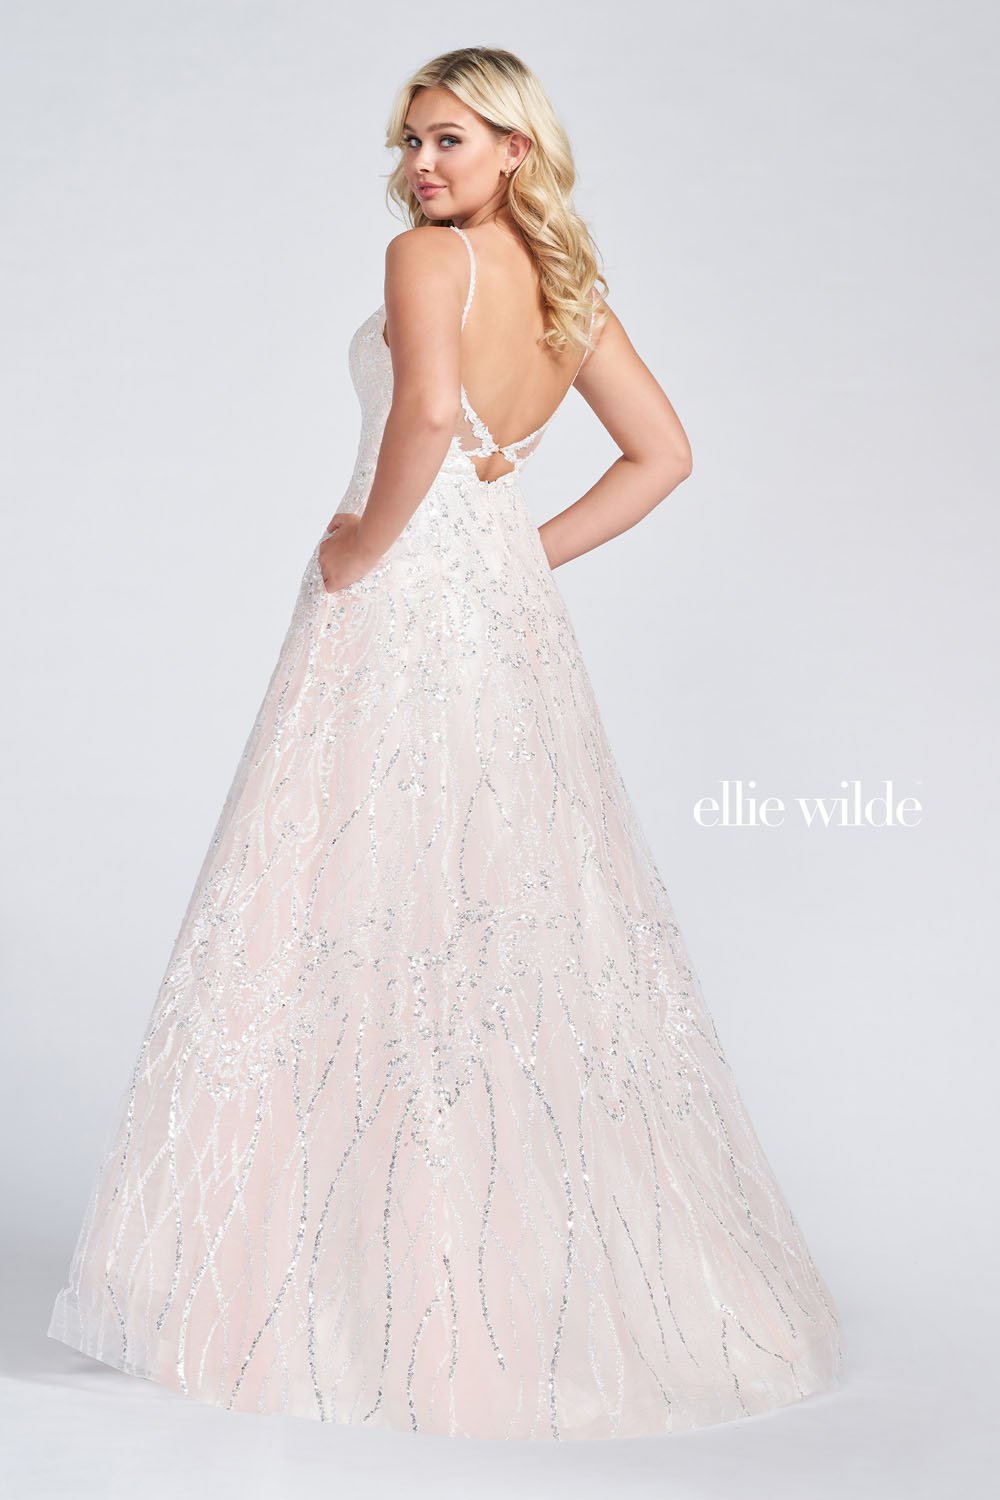 Ellie Wilde Frost EW122059 Prom Dress Image.  Frost formal dress.